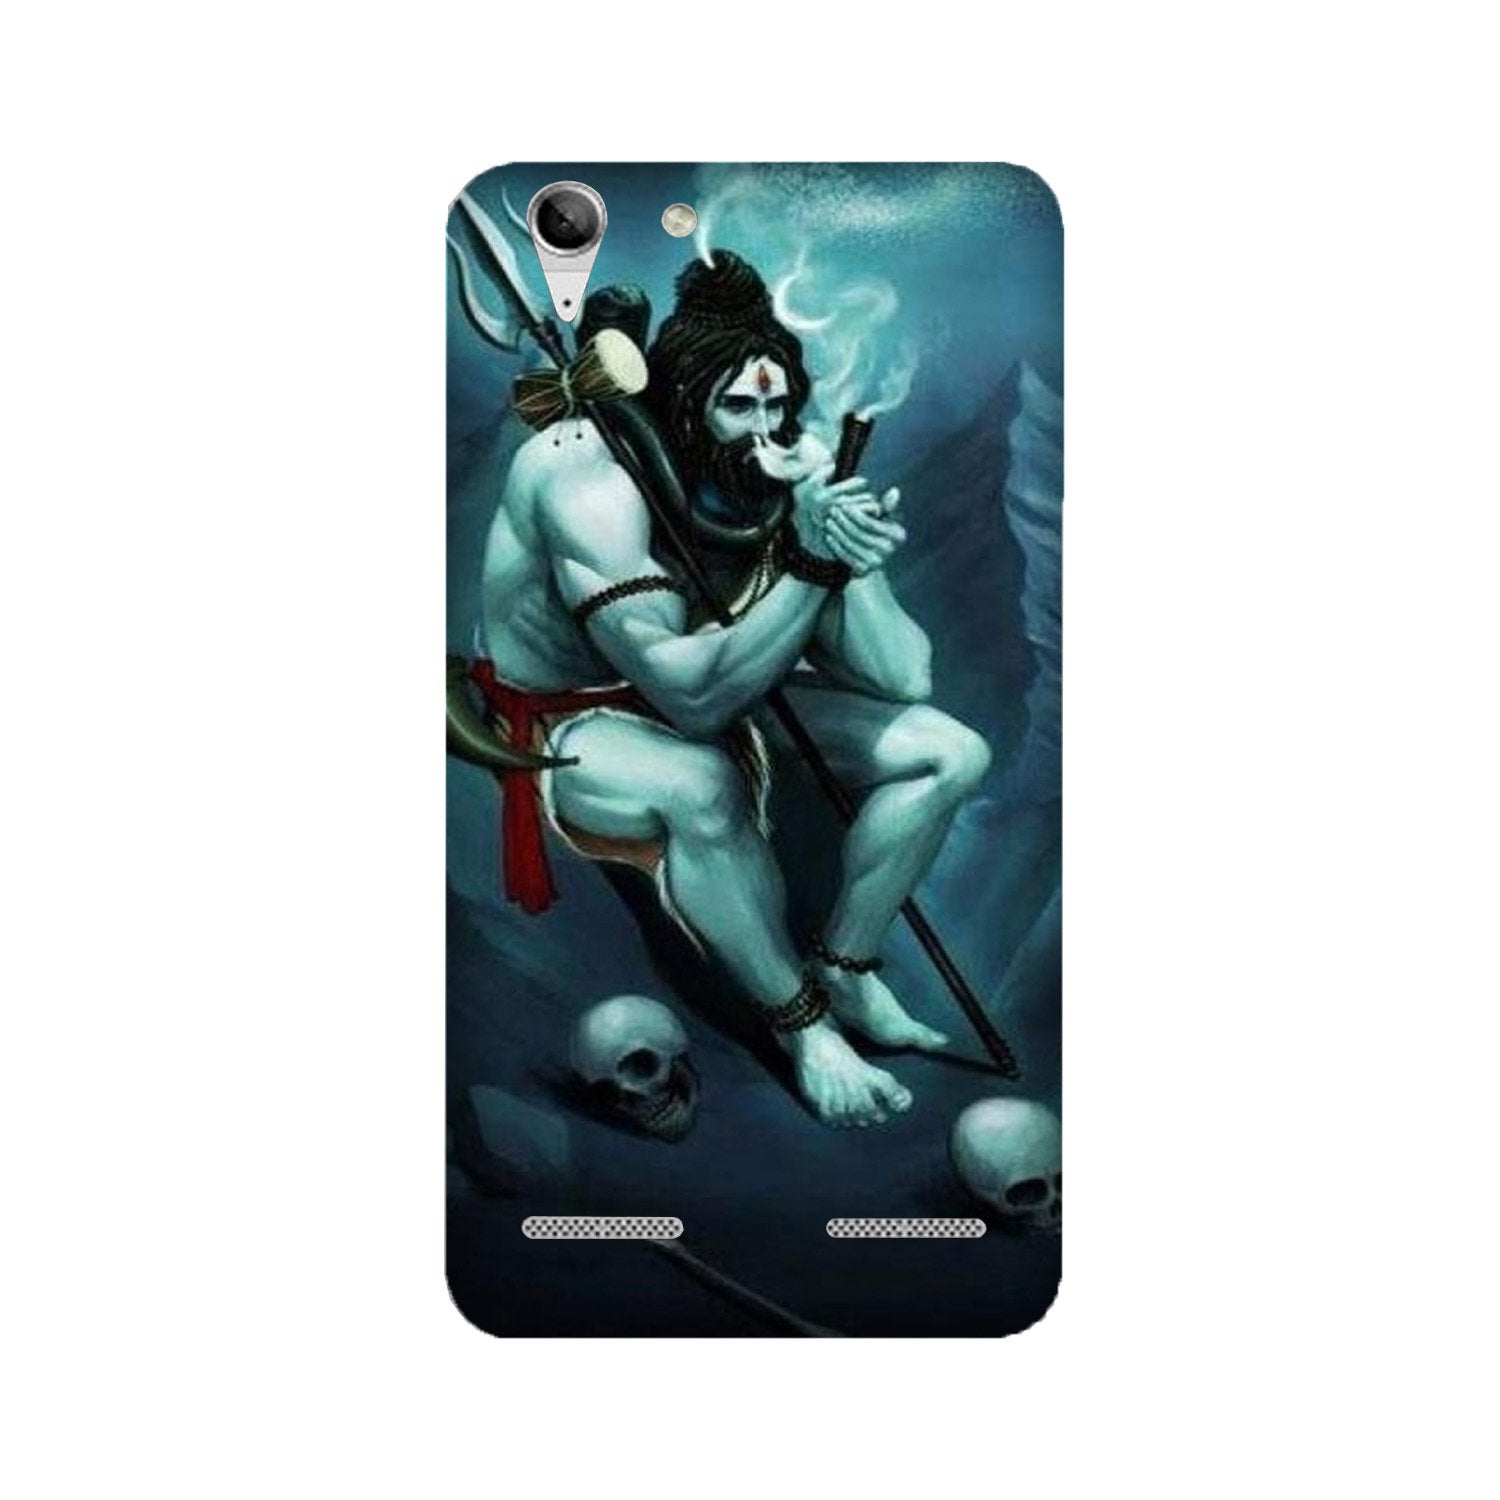 Lord Shiva Mahakal2 Case for Lenovo K5 / K5 Plus